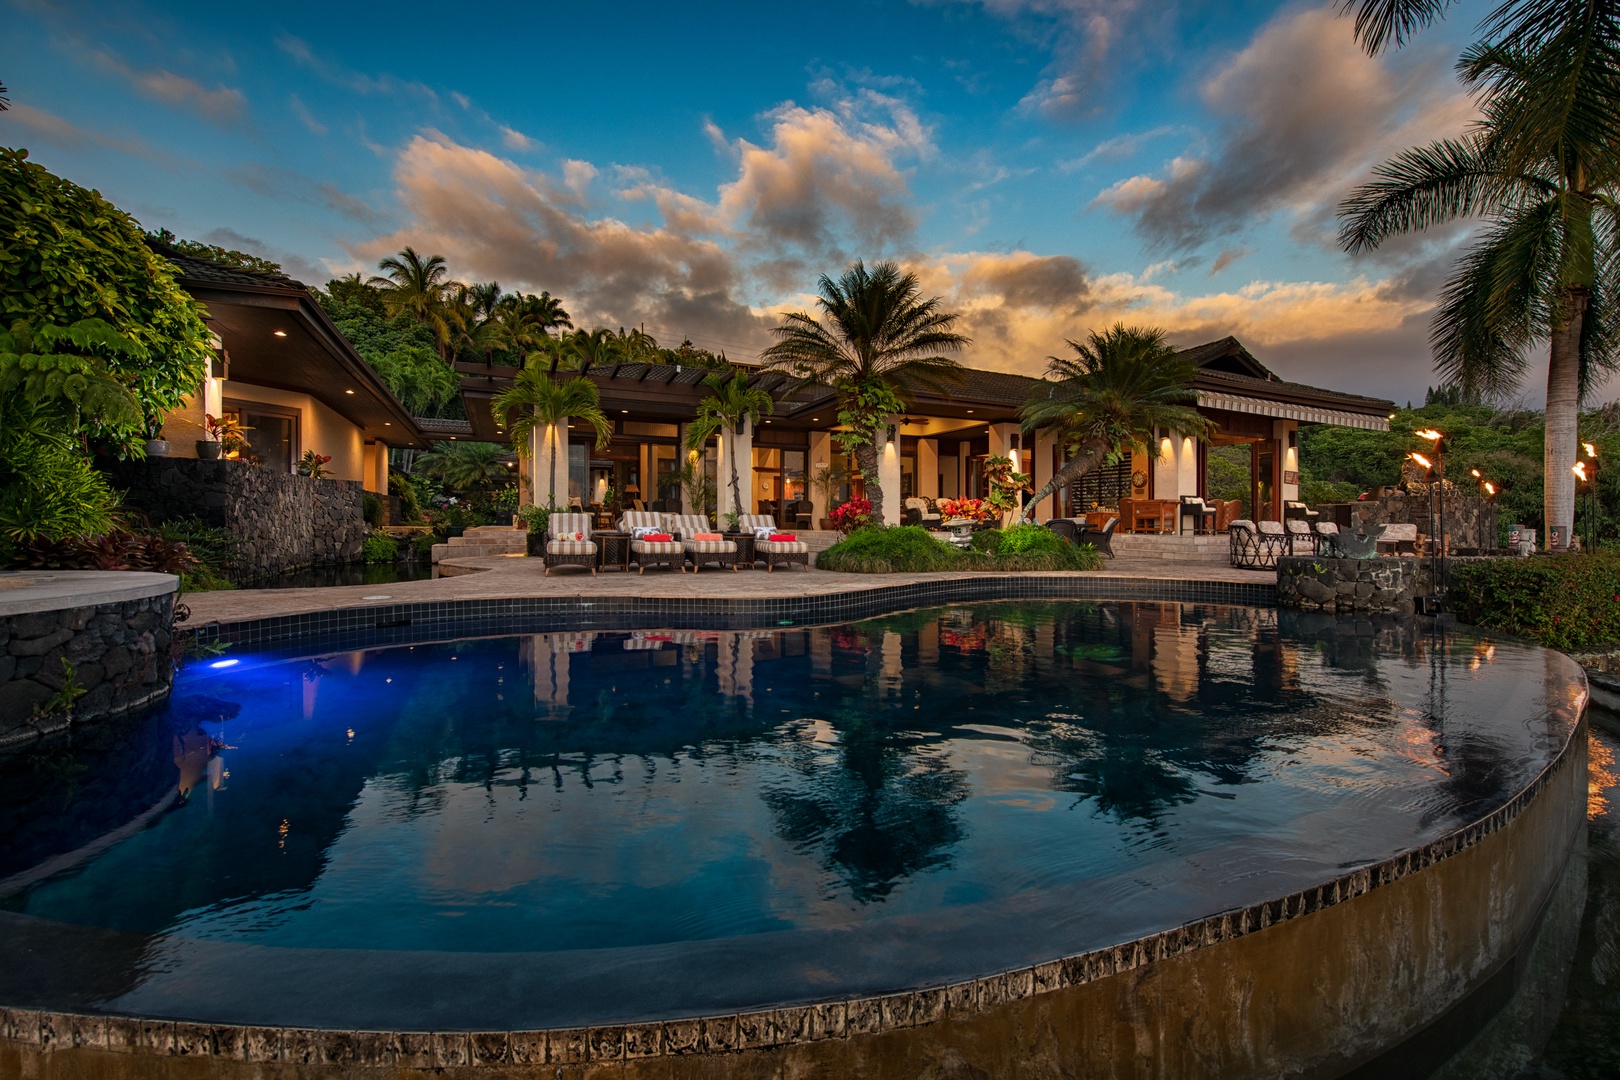 Kailua Kona Vacation Rentals, Hale Wailele** - Custom built infinity pool and spa with views